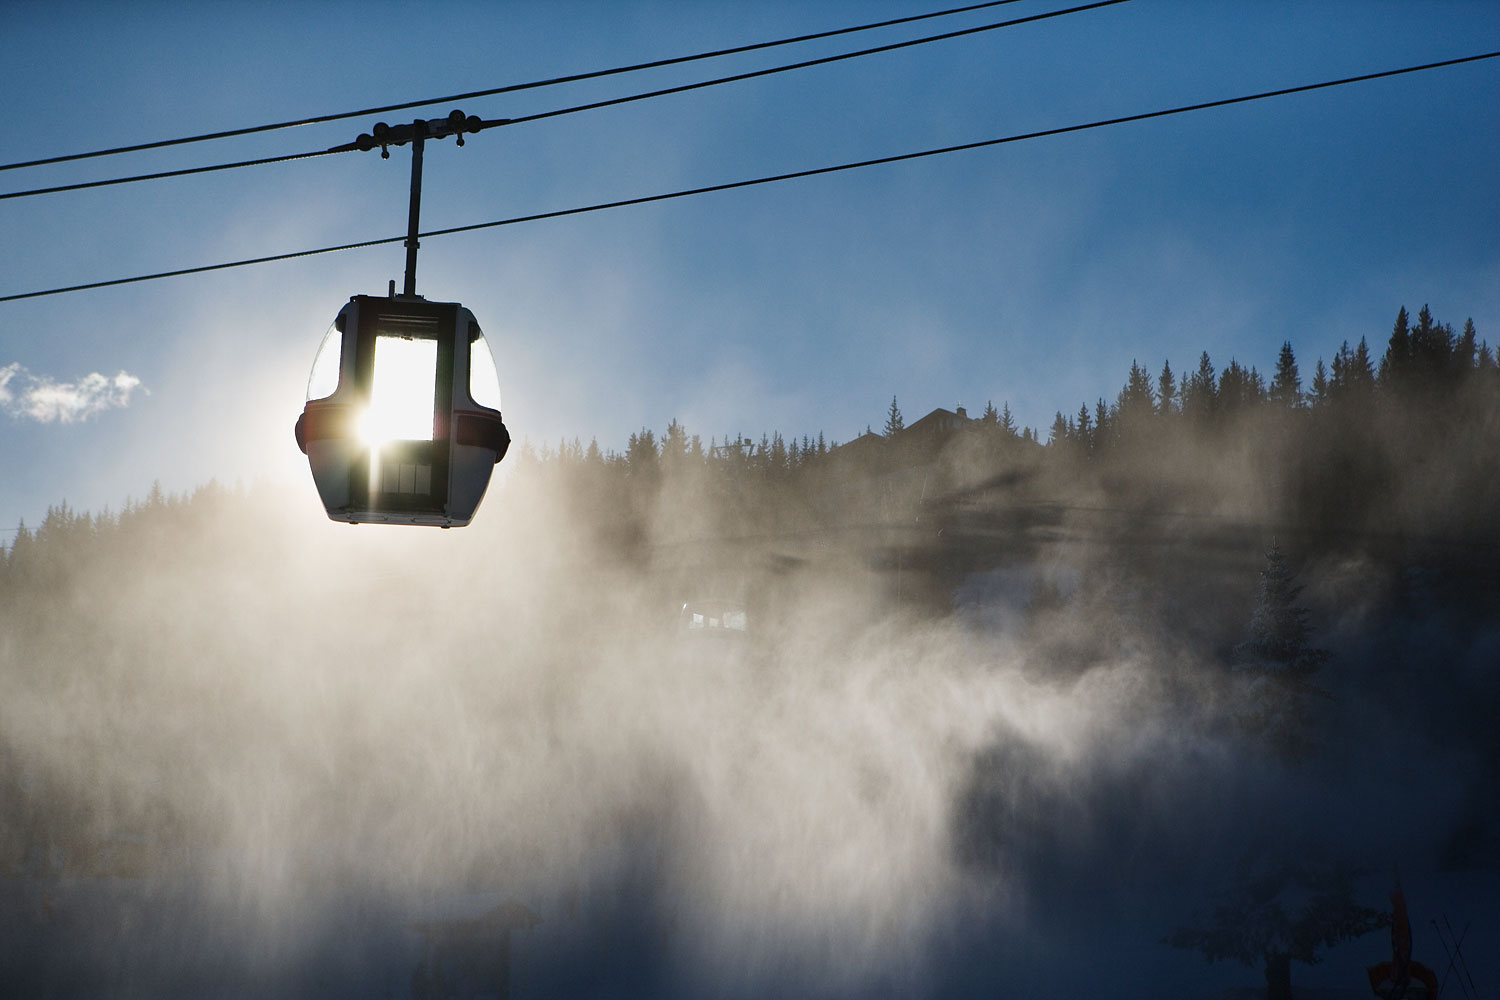 Empty Ski lifts